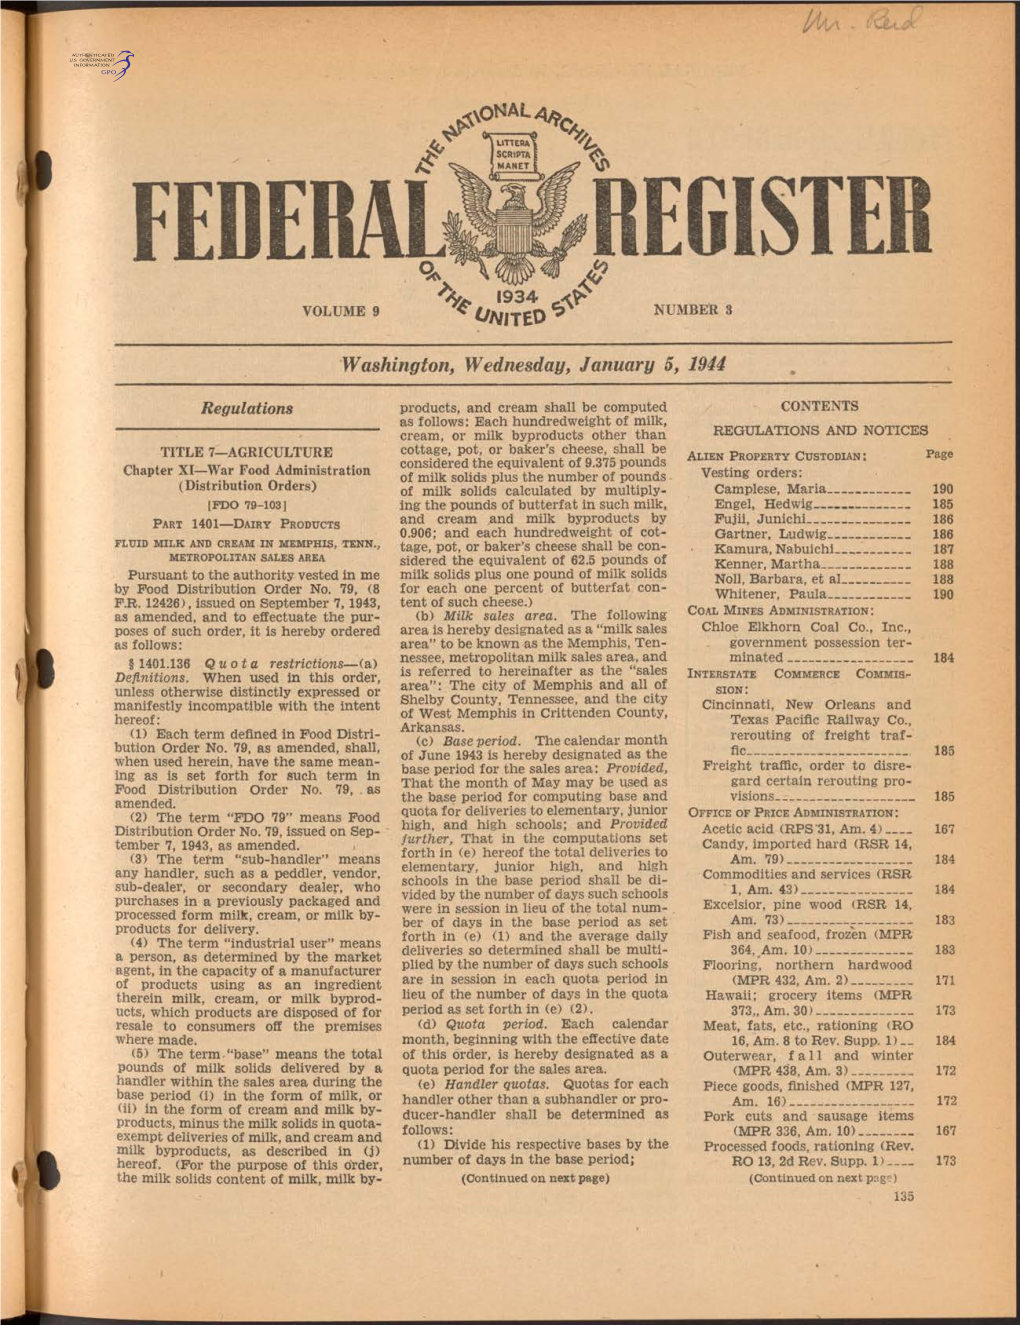 %C. 1934 Washington, Wednesday, January 5, 1944